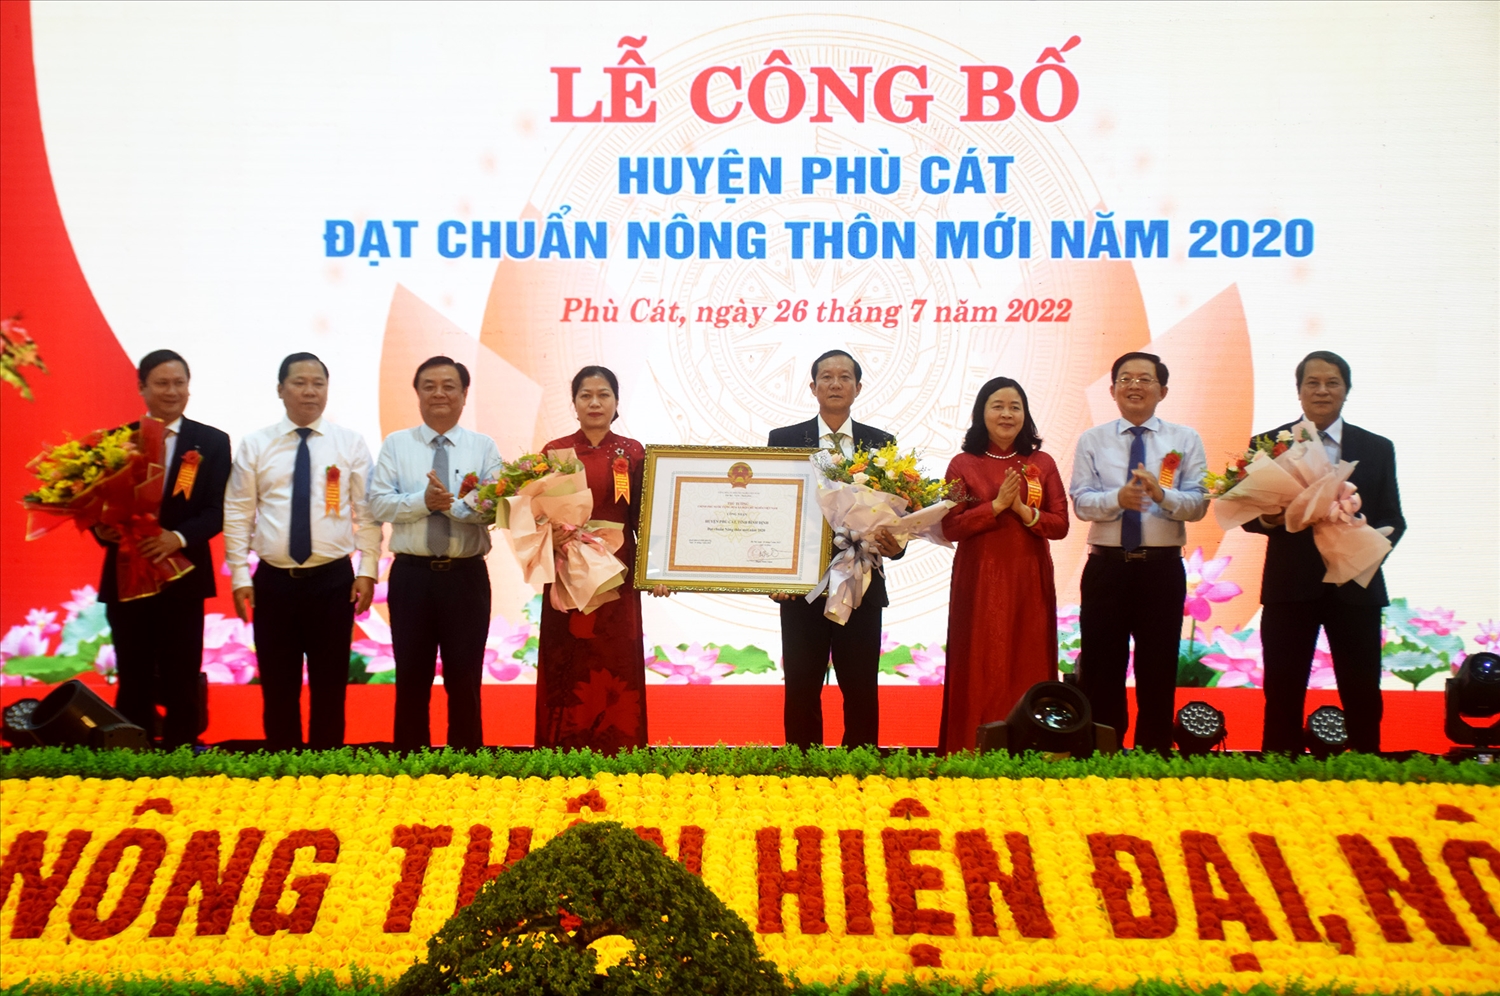 Lãnh đạo huyện Phù Cát đón nhận Bằng công nhận huyện đạt chuẩn Nông thôn mới năm 2020